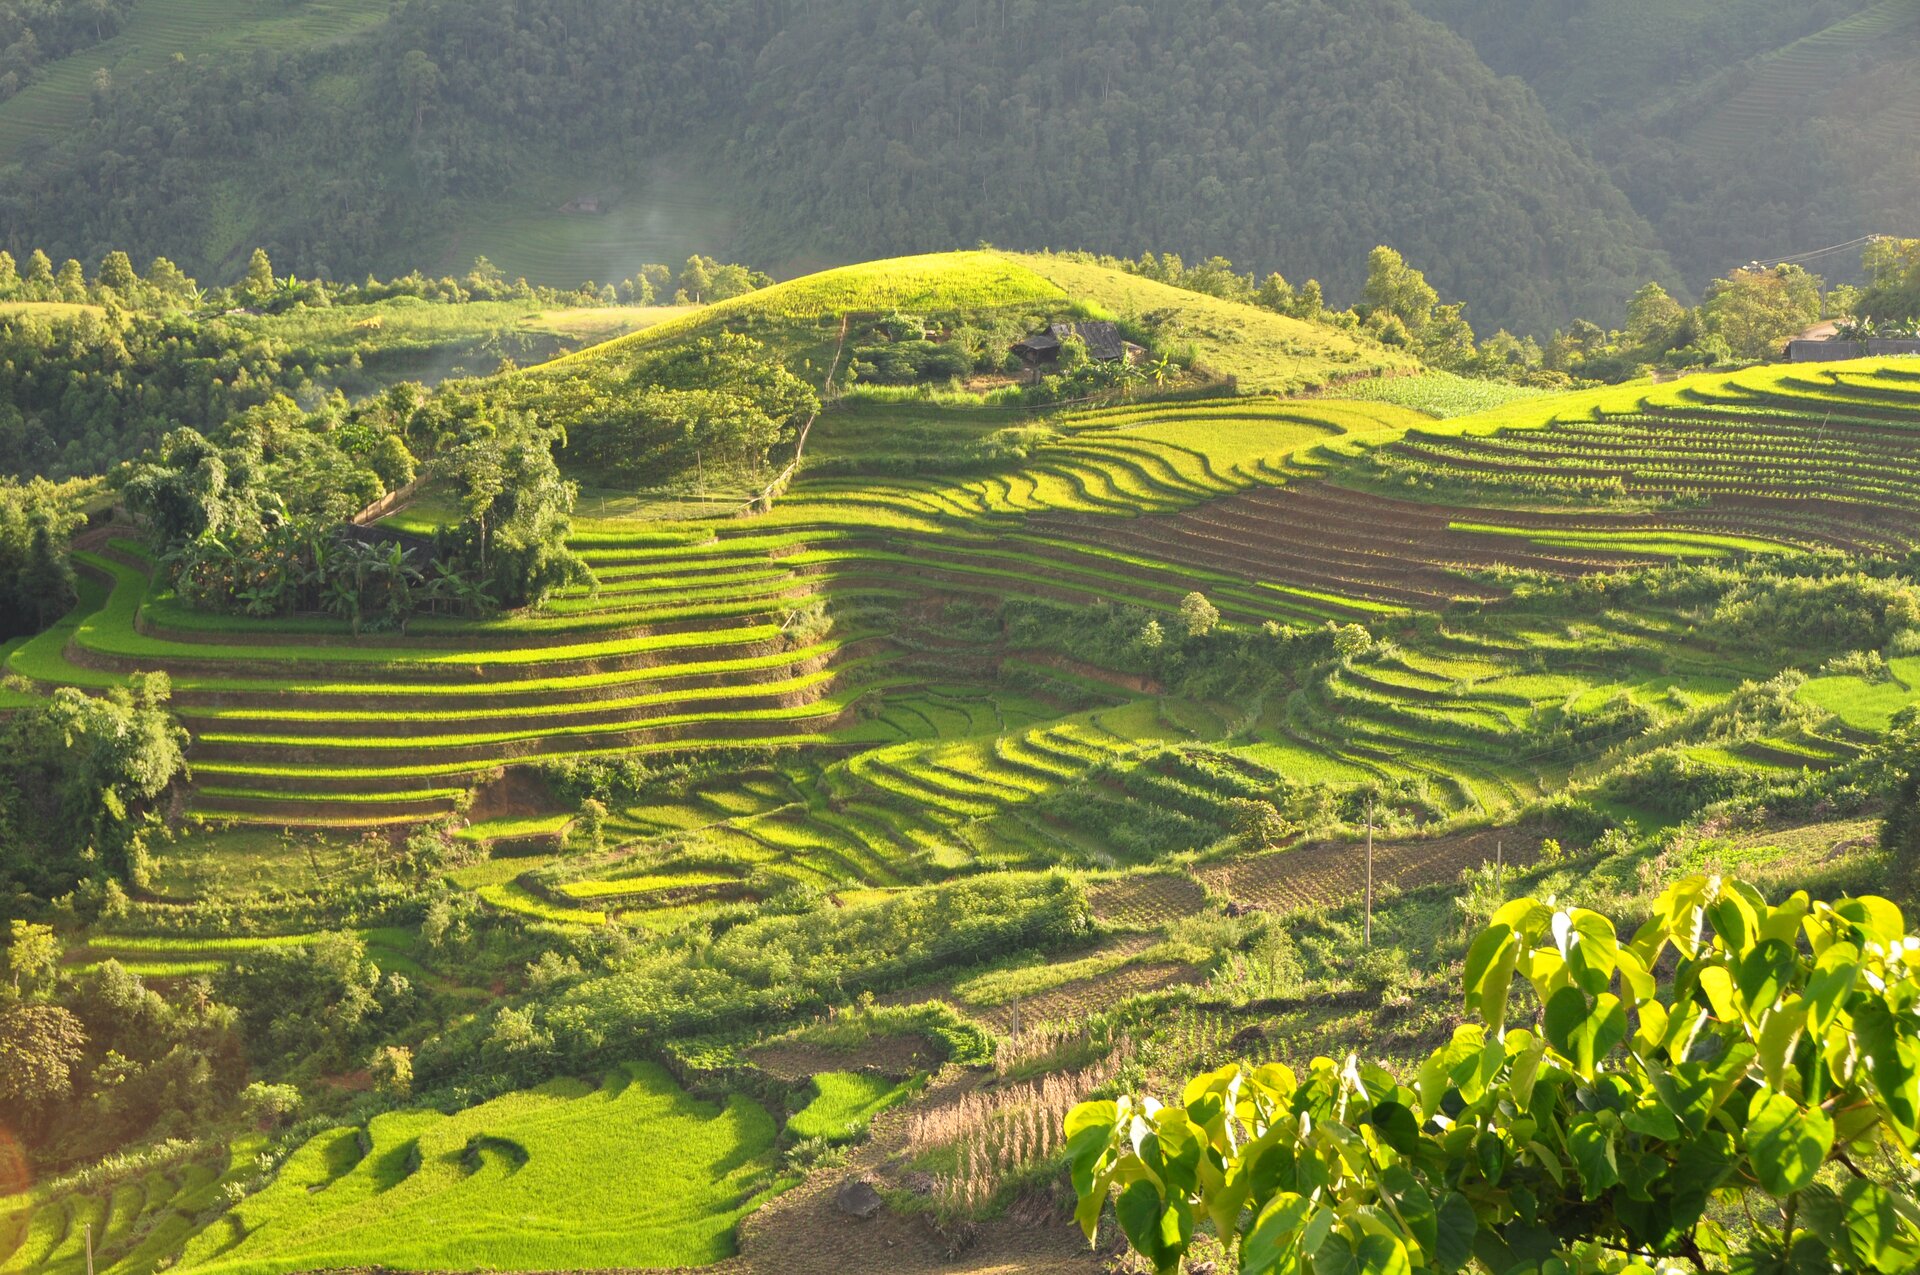 Zdjęcie przedstawia pola ryżowe w Wietnamie. Słoneczny dzień. Teren górzysty. Stoki o lekkim łagodnym nachyleniu. Stoki pokryte kaskadami pól ryżowych. Gdzieniegdzie pomiędzy tarasami niskie zielone drzewa. W tle wysokie góry pokryte gęsto rosnącymi zielonymi drzewami.